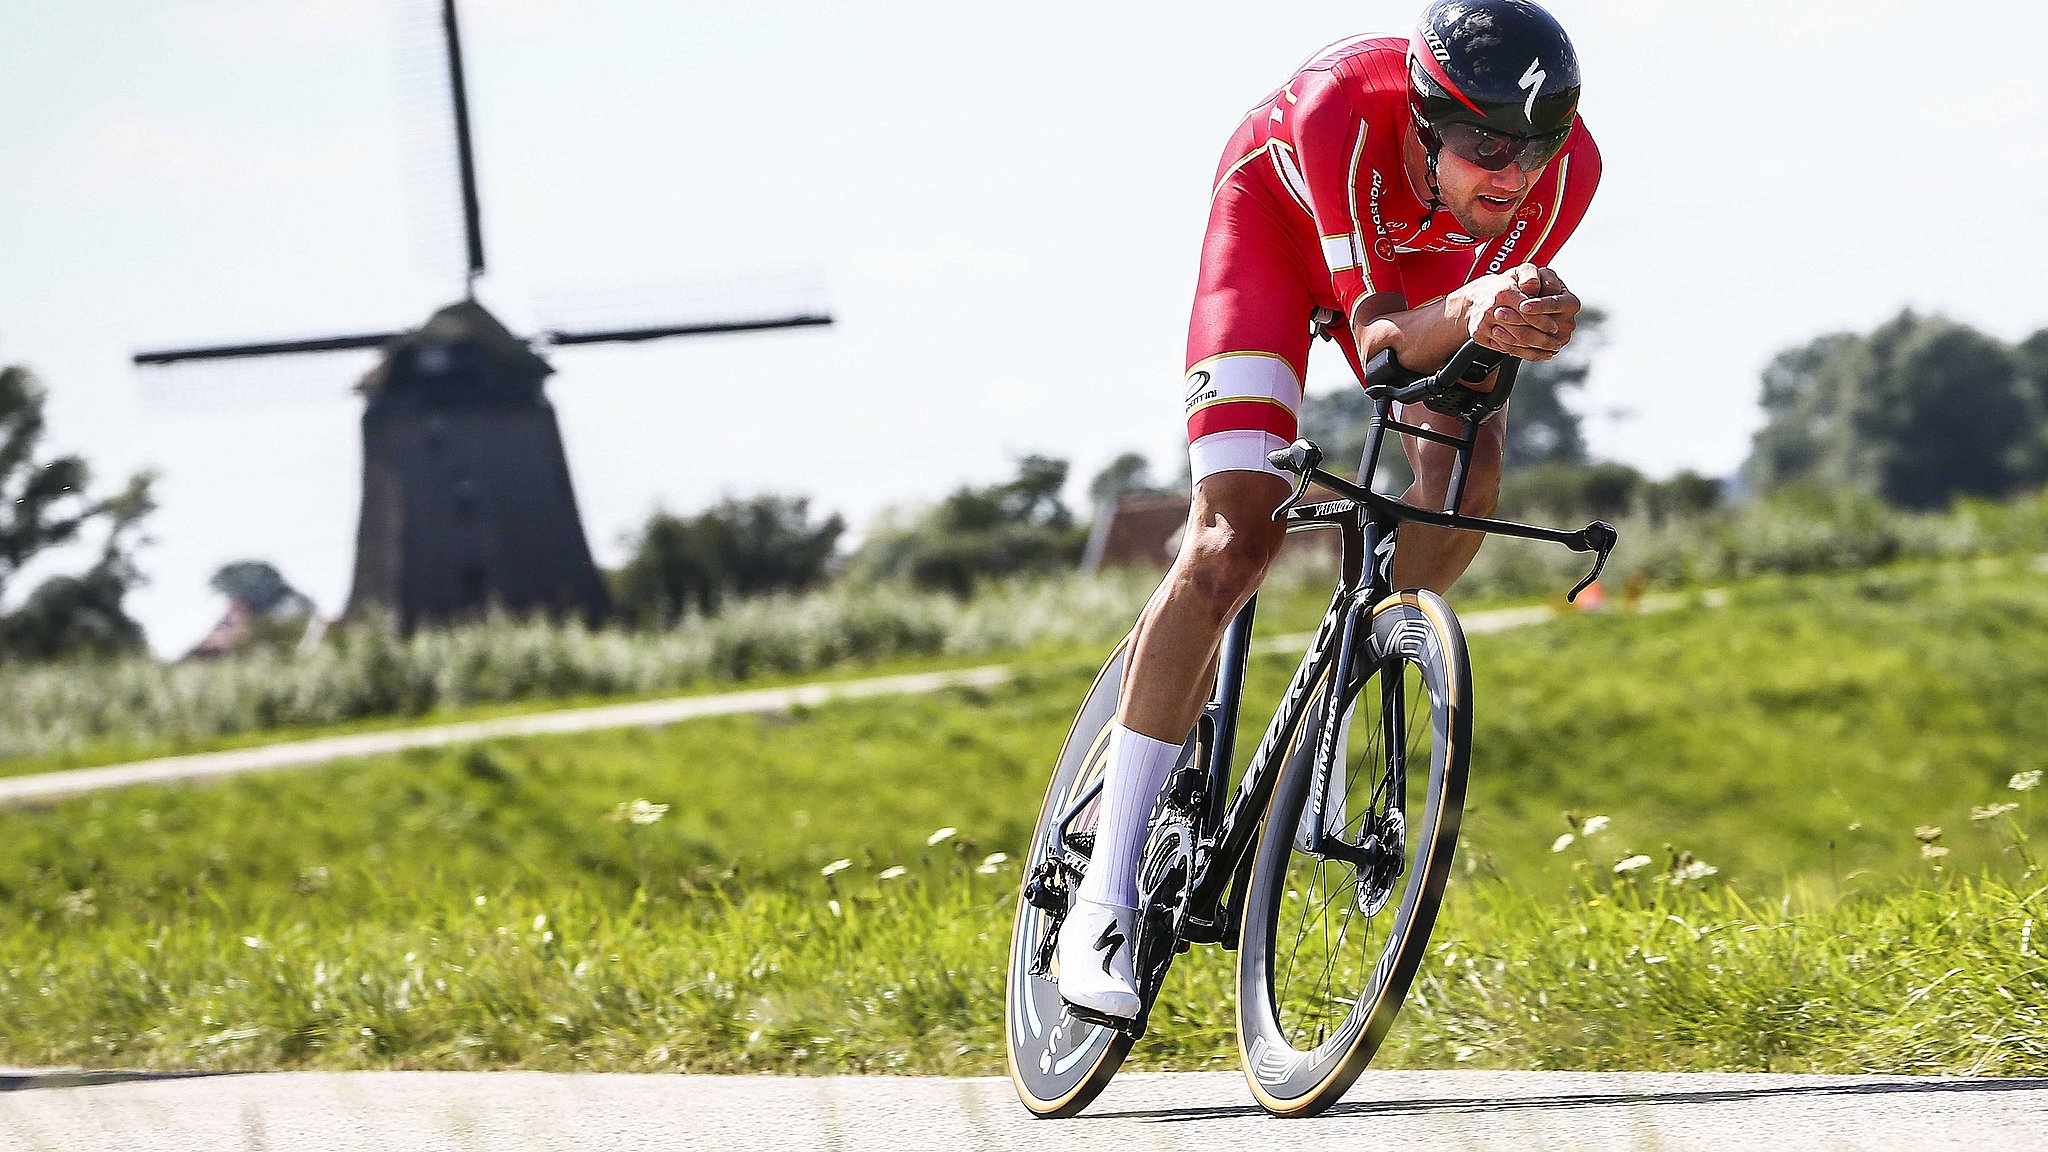 billede Bulk klæde sig ud VM i cykling: Asgreen drømmer om topresultat | TV SYD